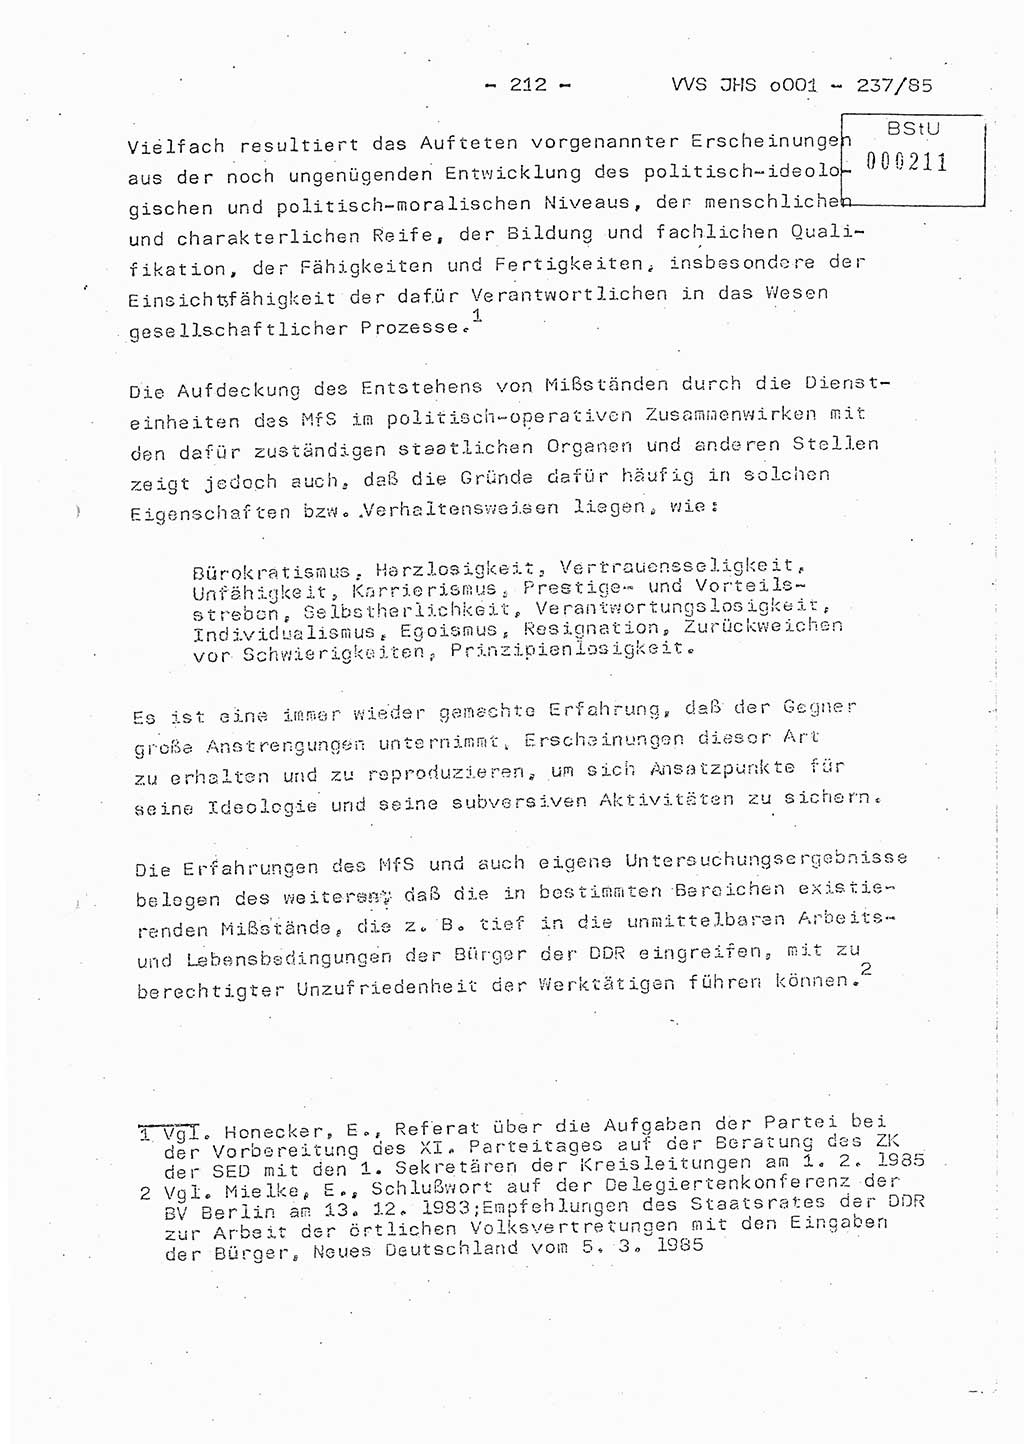 Dissertation Oberstleutnant Peter Jakulski (JHS), Oberstleutnat Christian Rudolph (HA Ⅸ), Major Horst Böttger (ZMD), Major Wolfgang Grüneberg (JHS), Major Albert Meutsch (JHS), Ministerium für Staatssicherheit (MfS) [Deutsche Demokratische Republik (DDR)], Juristische Hochschule (JHS), Vertrauliche Verschlußsache (VVS) o001-237/85, Potsdam 1985, Seite 212 (Diss. MfS DDR JHS VVS o001-237/85 1985, S. 212)